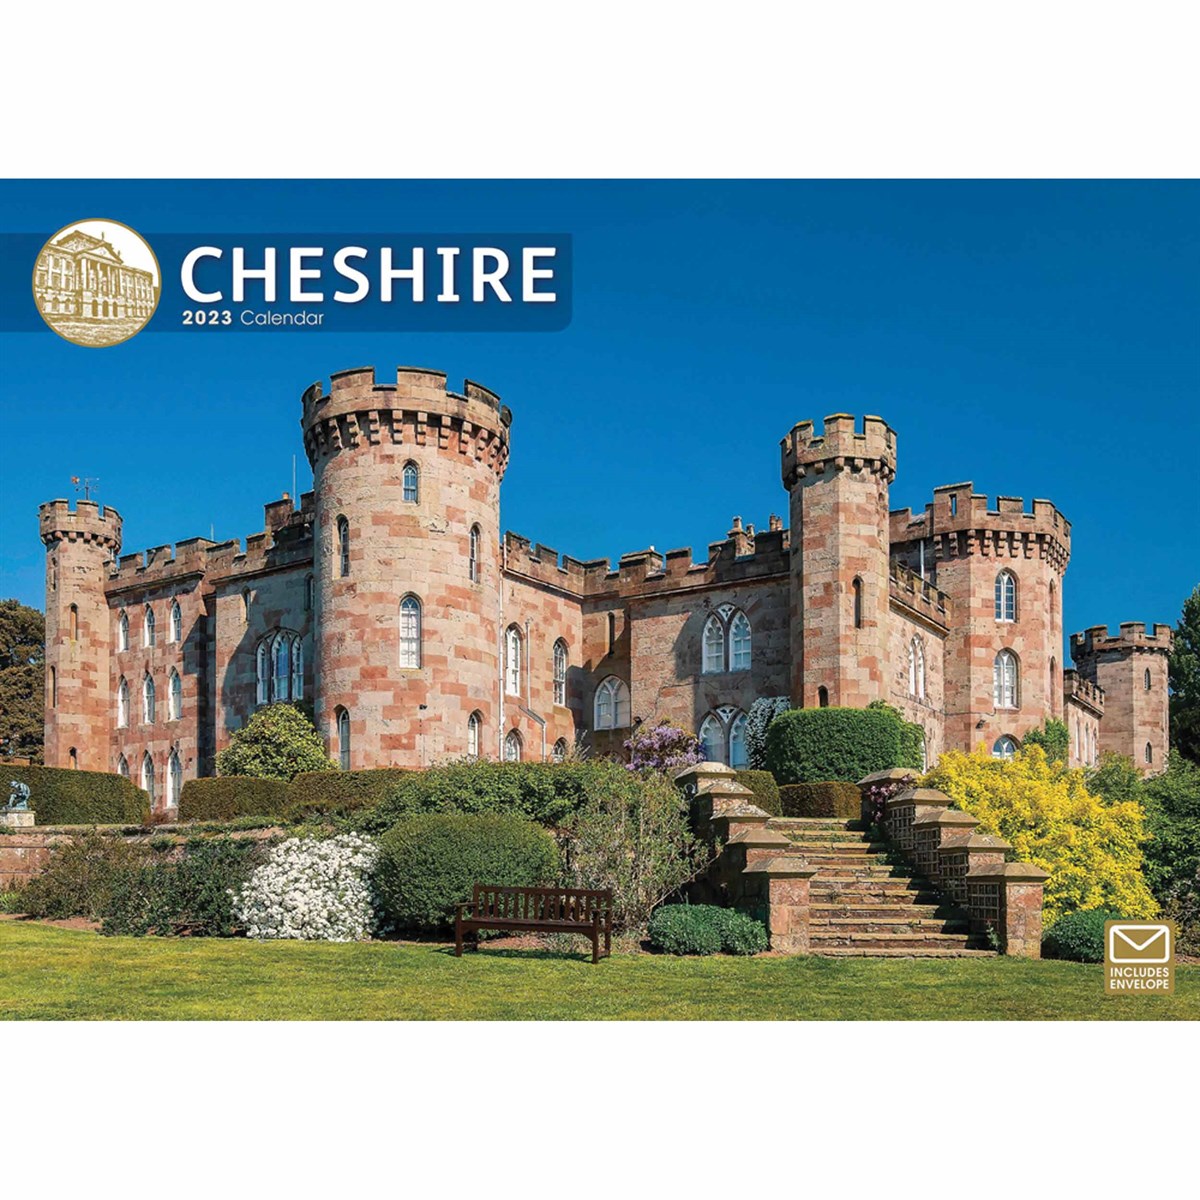 Cheshire A4 2023 Calendars